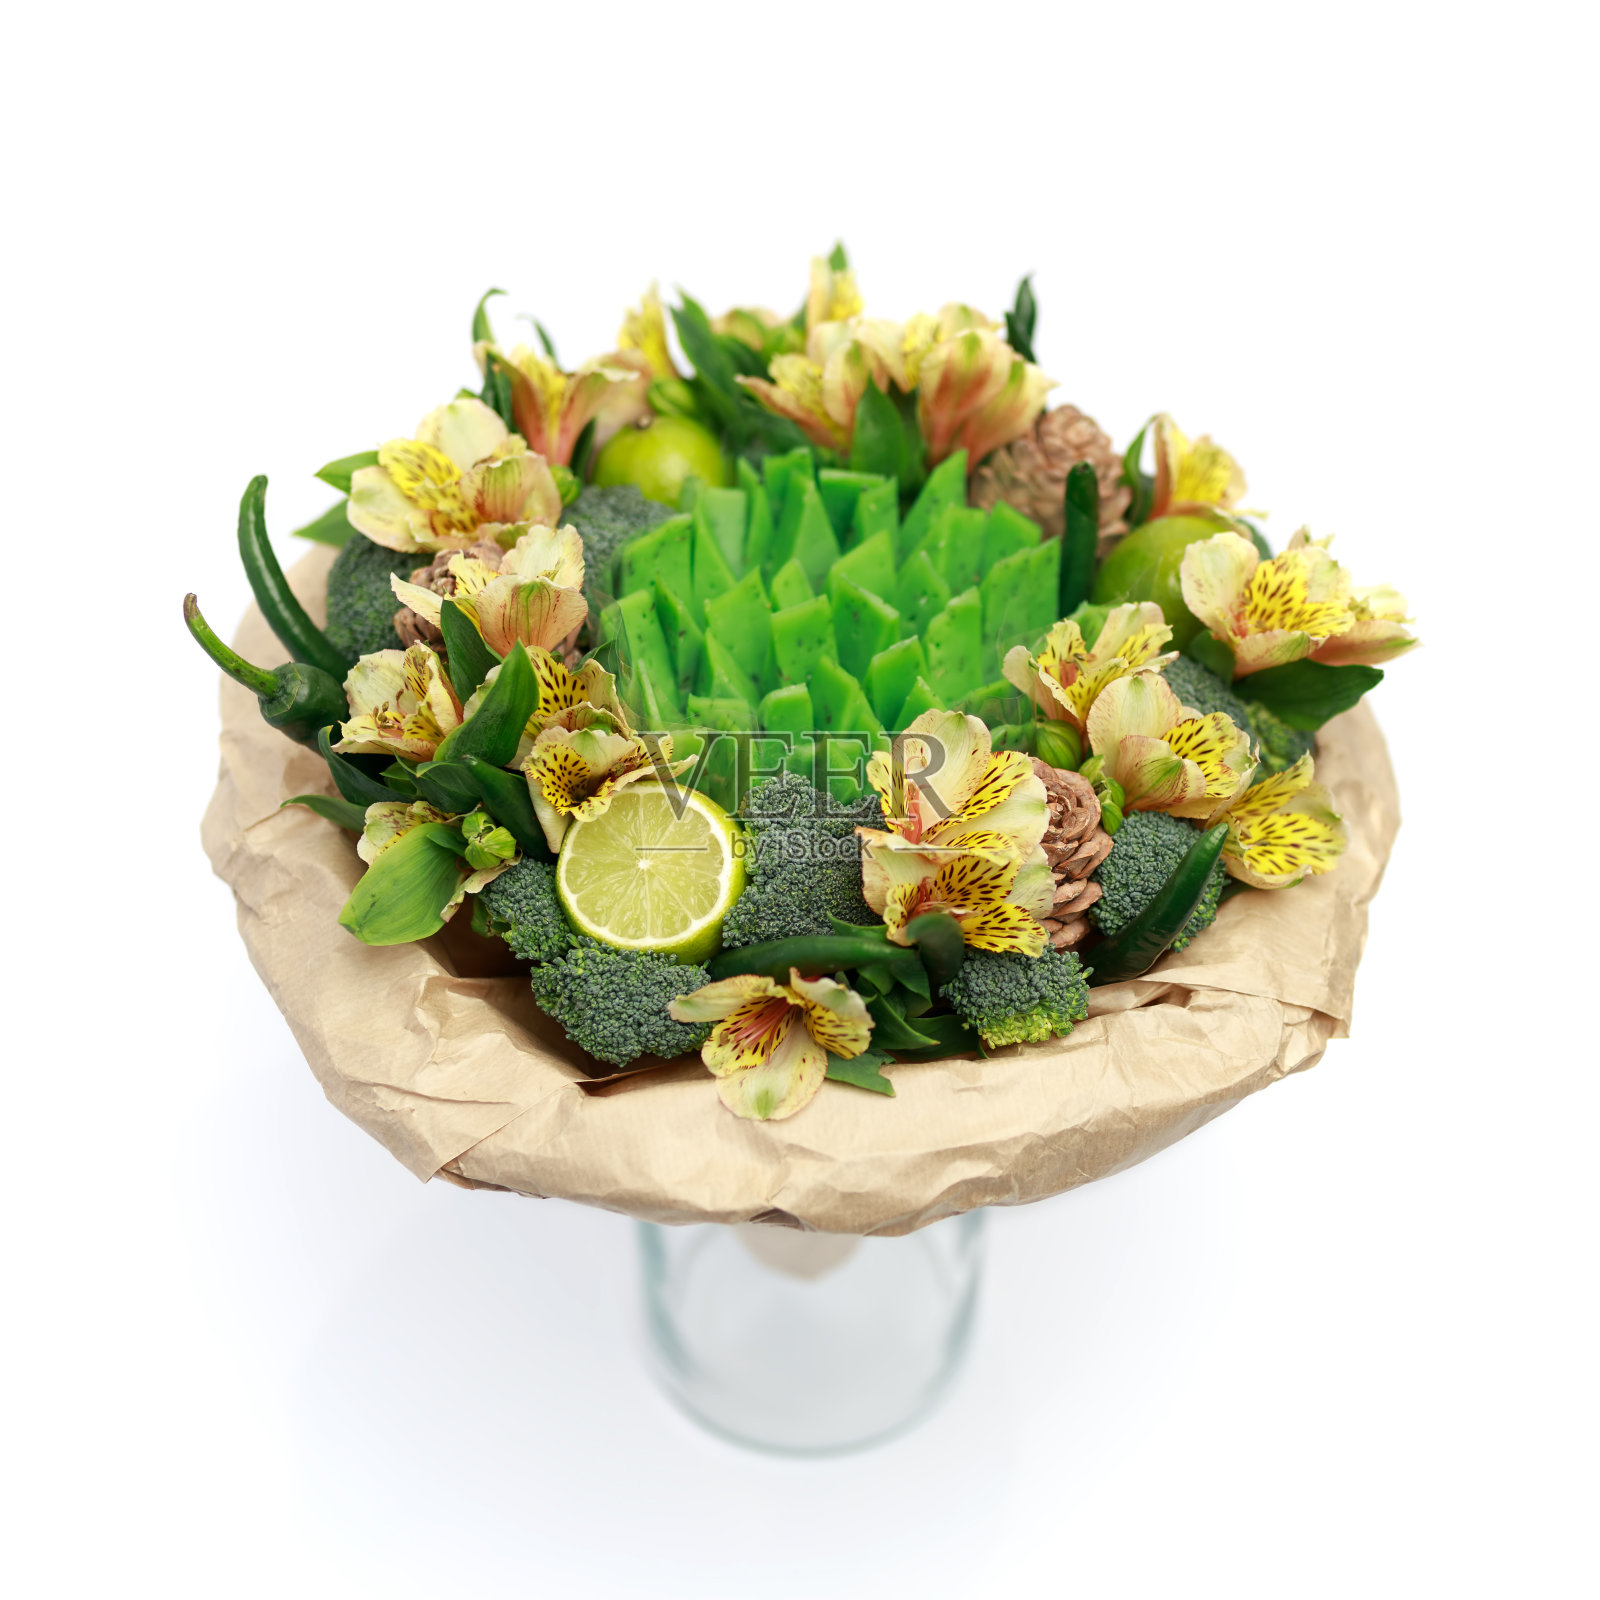 最初的礼物是一束鲜花、蔬菜和绿色奶酪，放在一个玻璃花瓶里，孤立在白色的背景上照片摄影图片